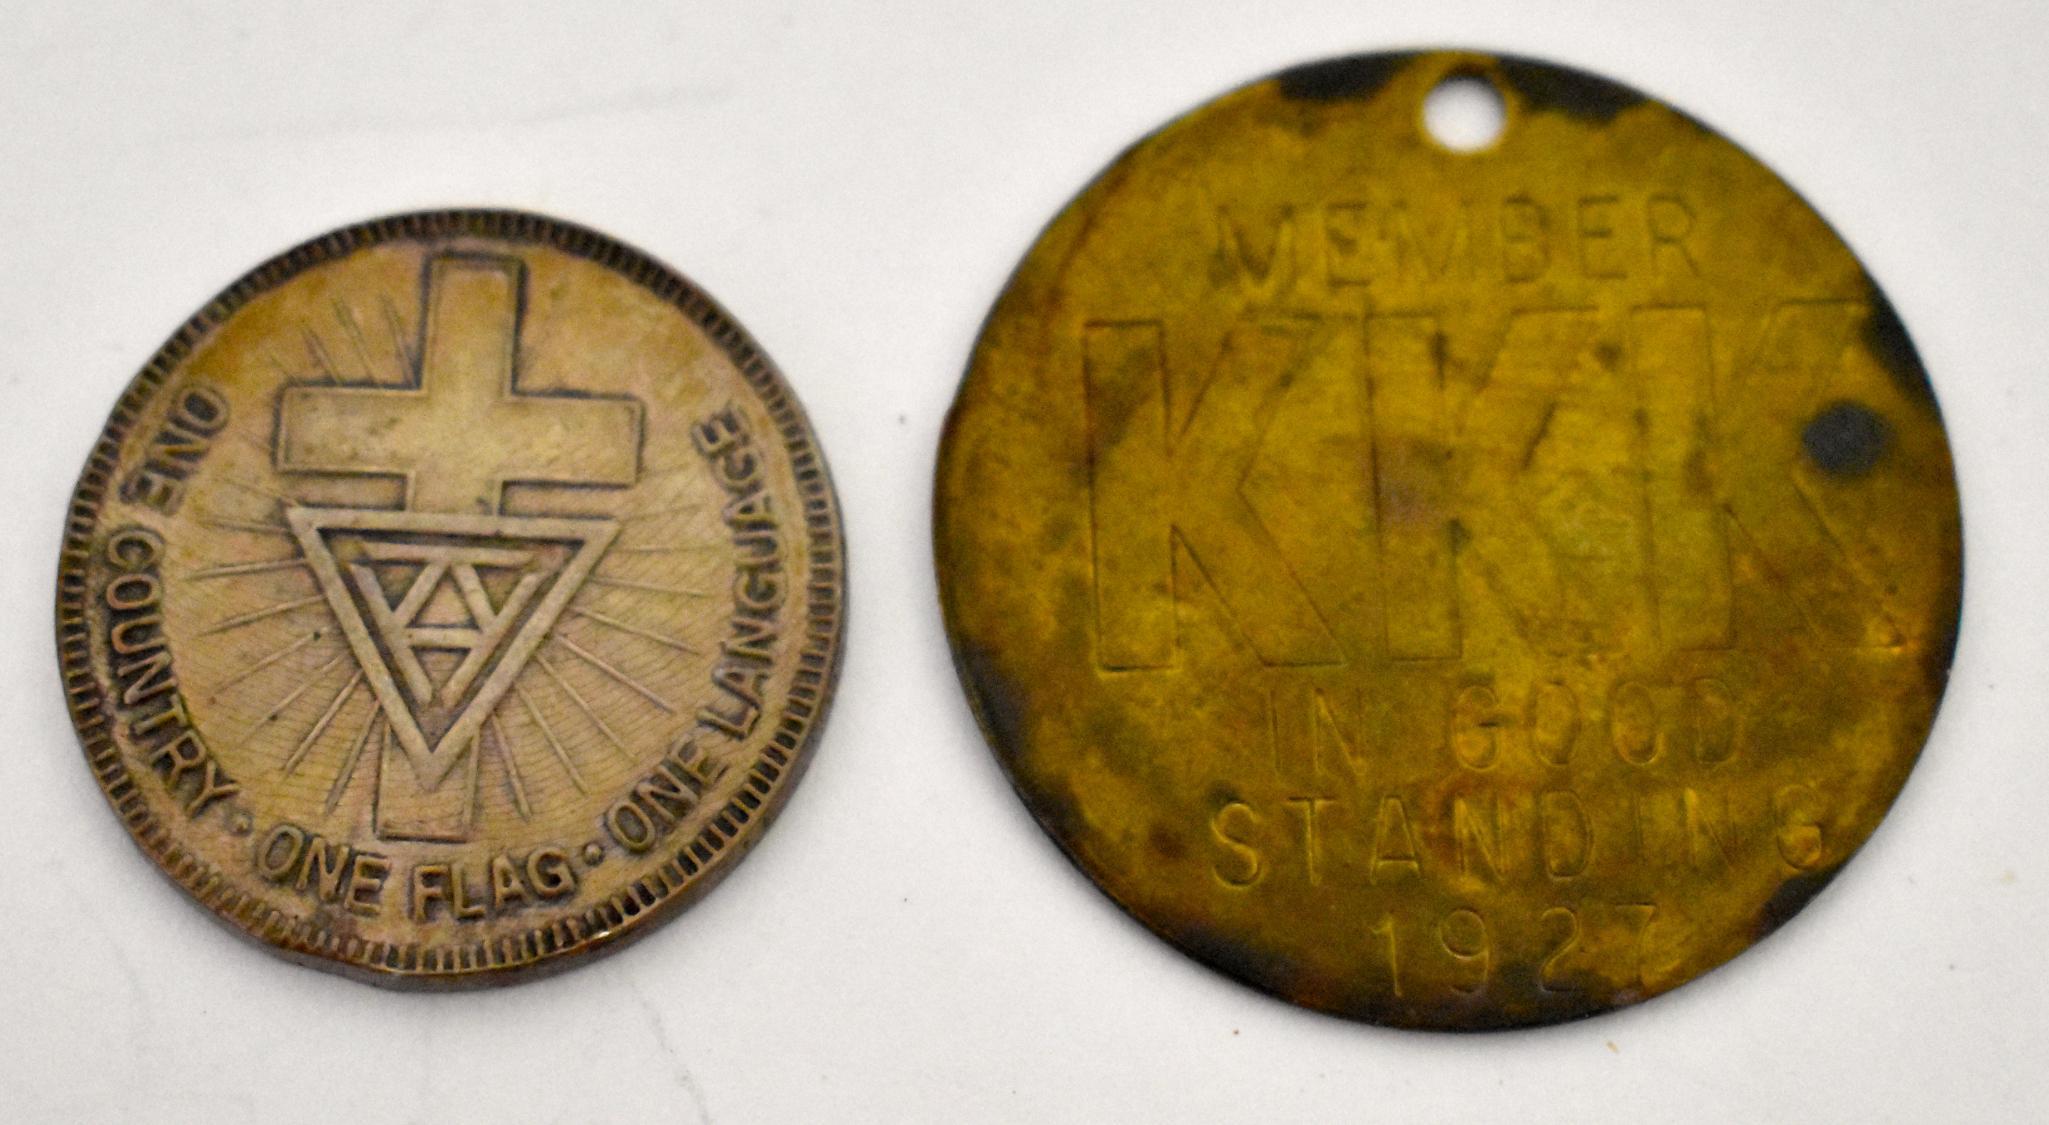 1927 KKK Member in Good Standing Medallion plus 1866 Coin | Toys 